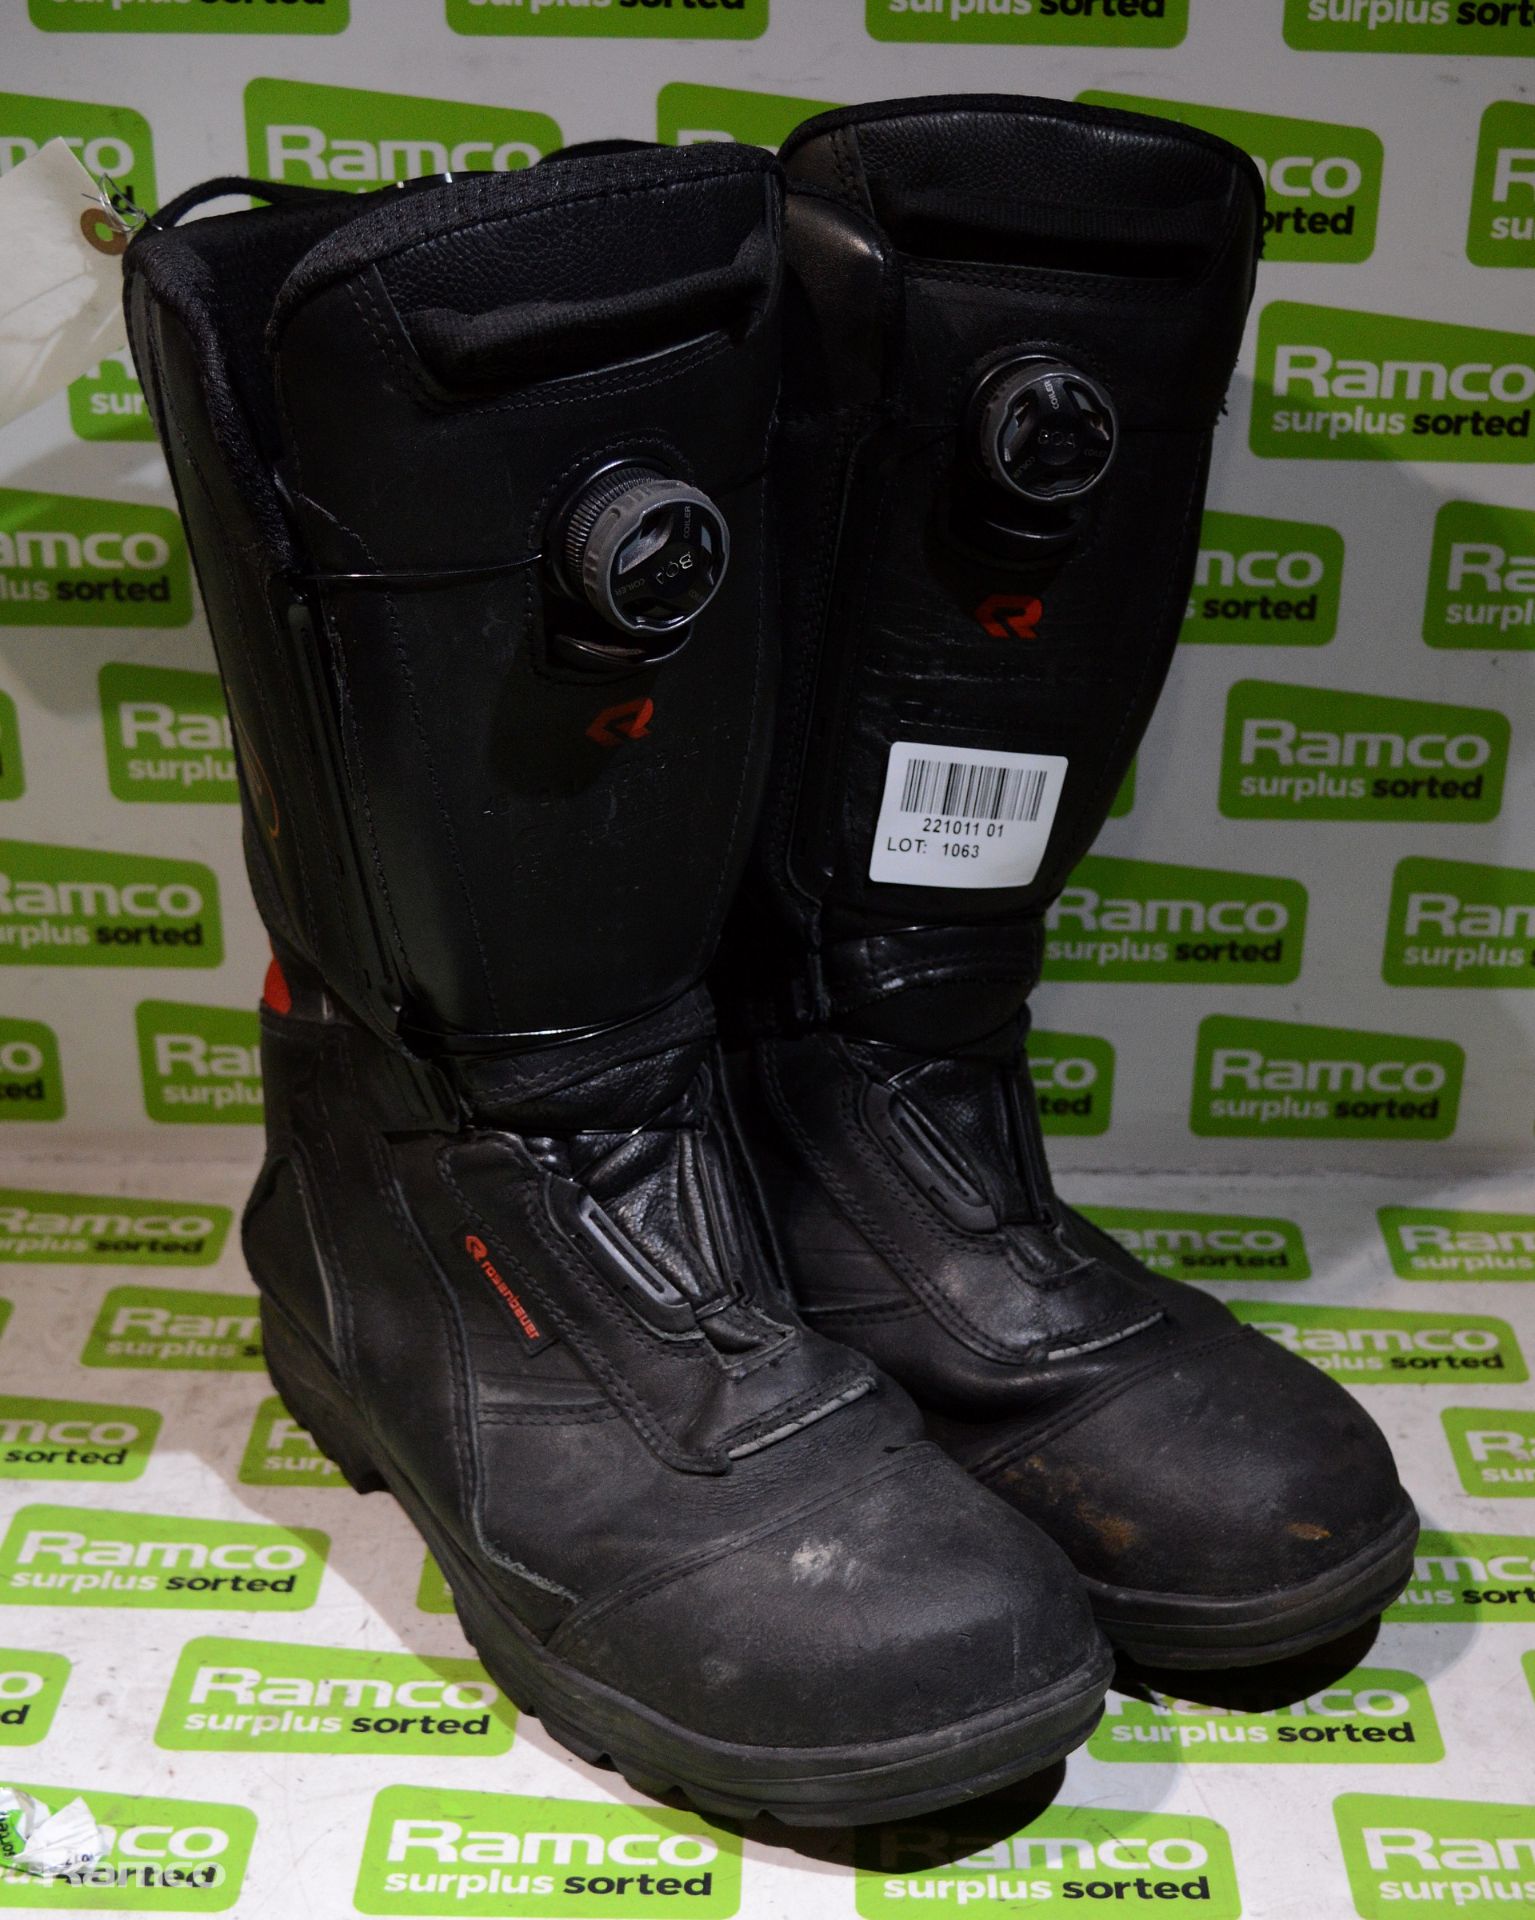 Rosenbauer safety boot - size EU 46 - UK 11.5